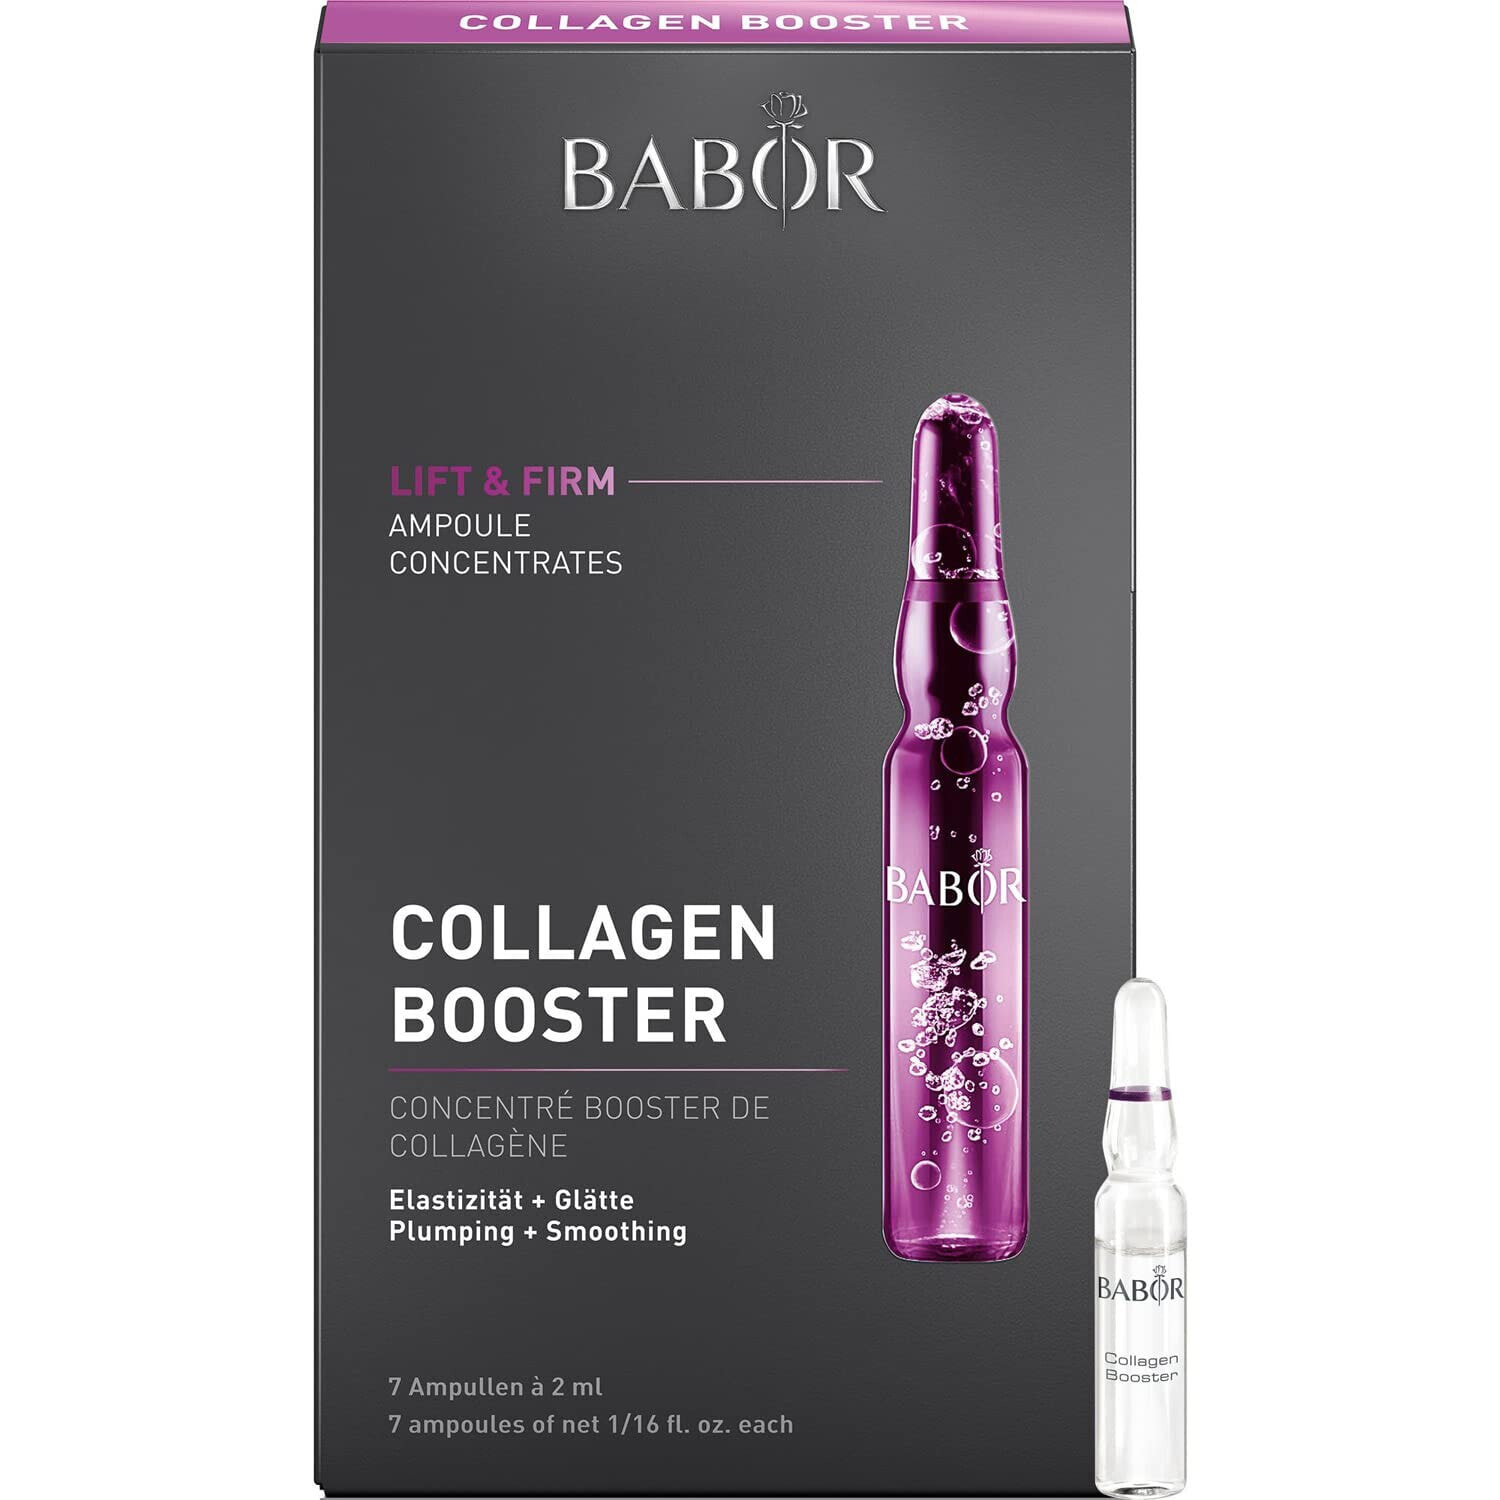 BABOR Collagen Booster, Anti-Aging Serum Ampullen für das Gesicht, Mit Tripeptid für mehr Elastizität und Glätte, Ampoule Concentrates, 7 x 2 ml